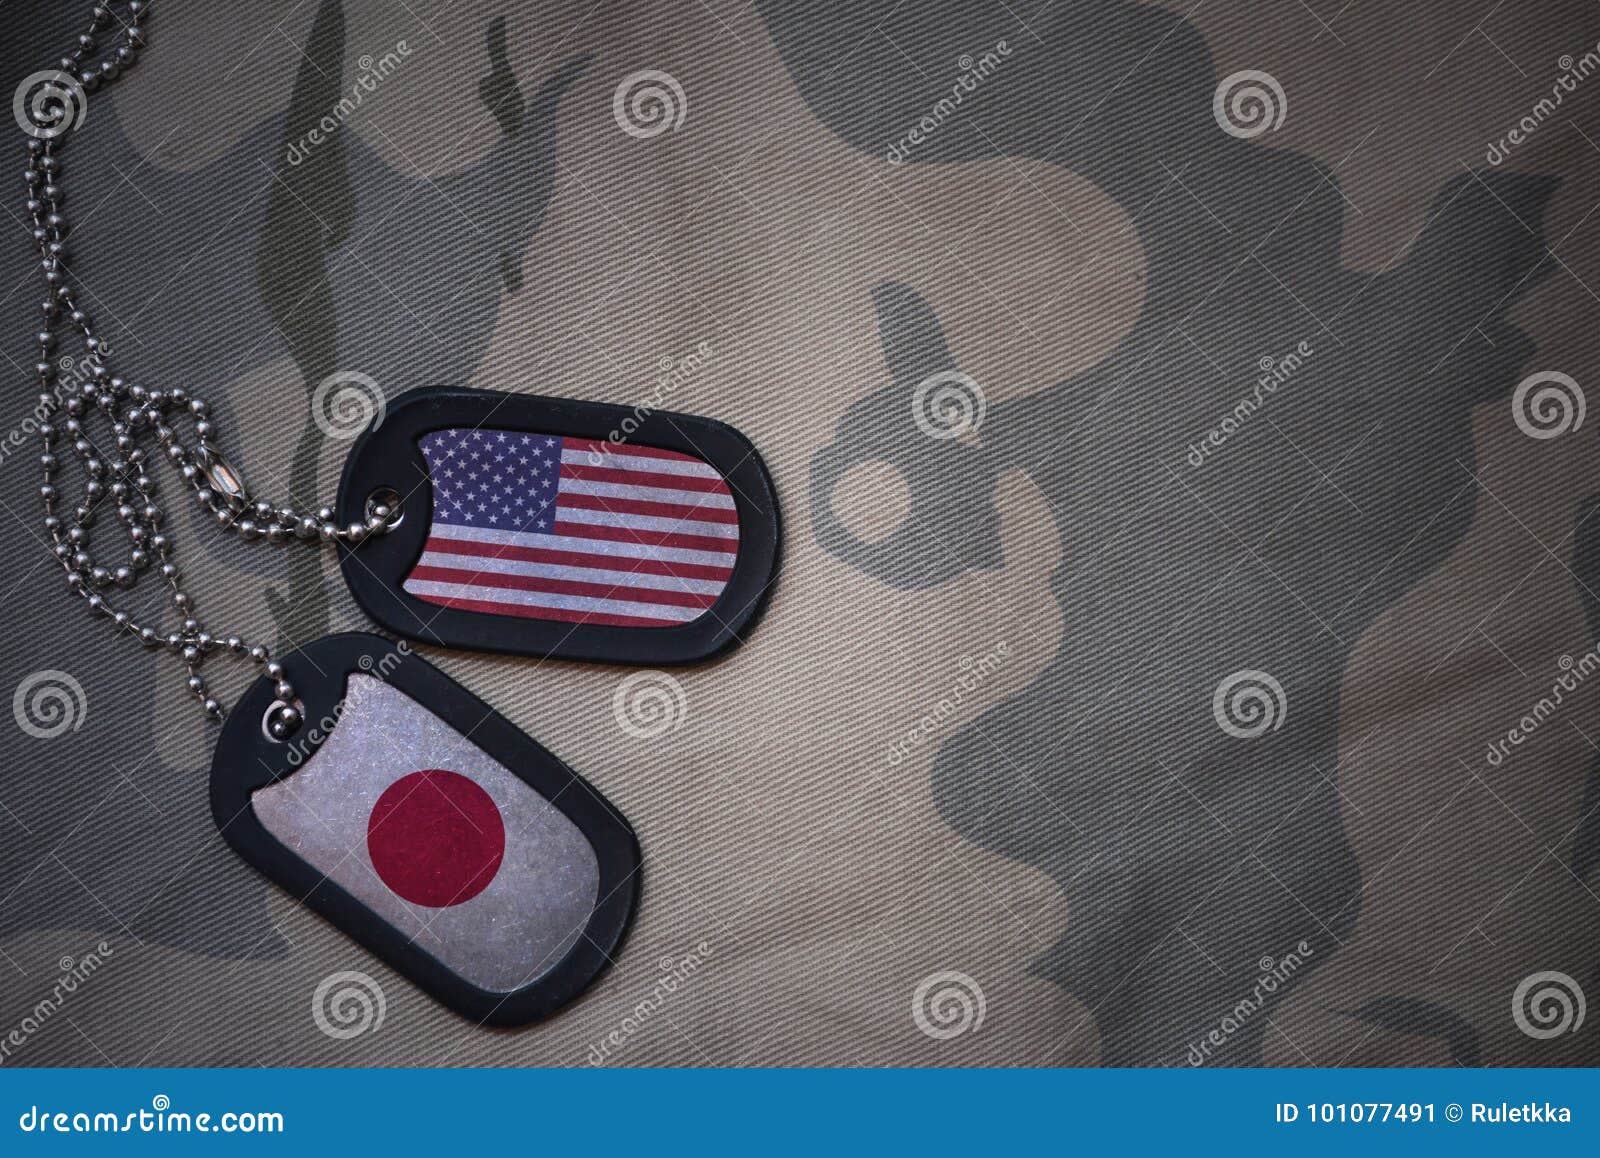 Espacio En Blanco Del Ejército, Placa De Identificación La Bandera De Los Unidos De América Japón En El Fondo De Co Imagen de archivo Imagen de blanco, oriente: